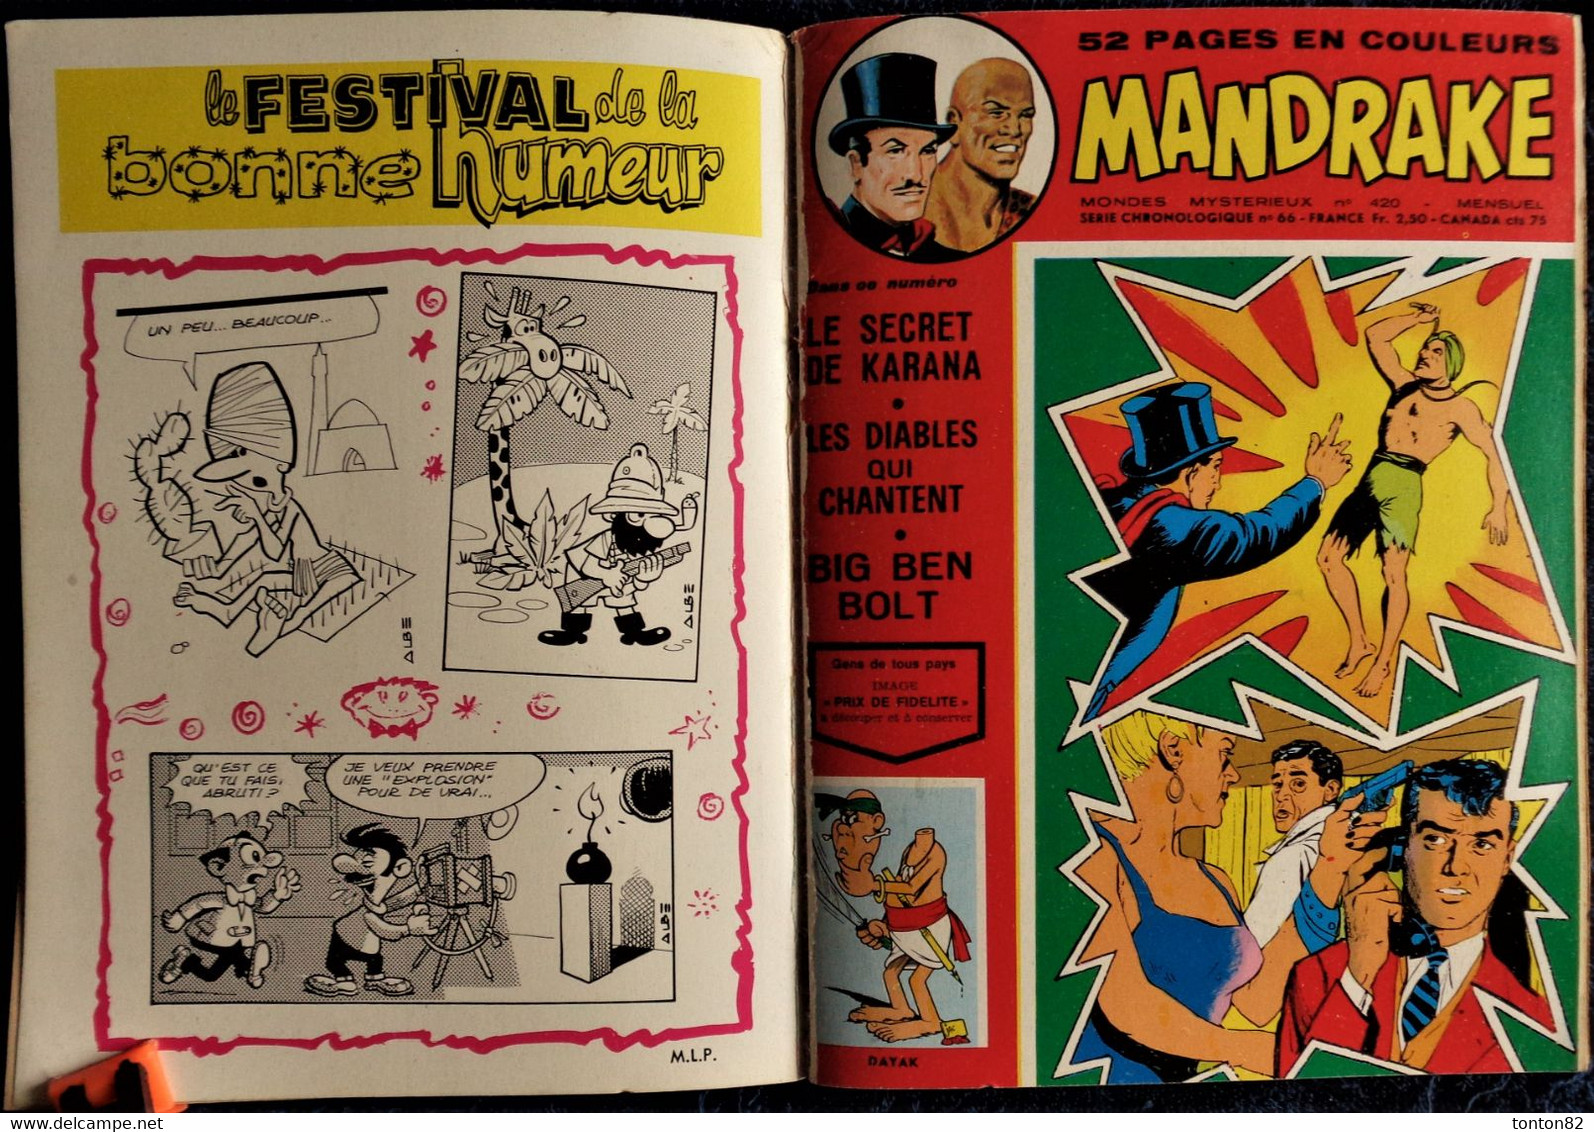 MANDRAKE - Album N° 51 - ( 419 - 420 ) - ( 1974 ) . - Mandrake